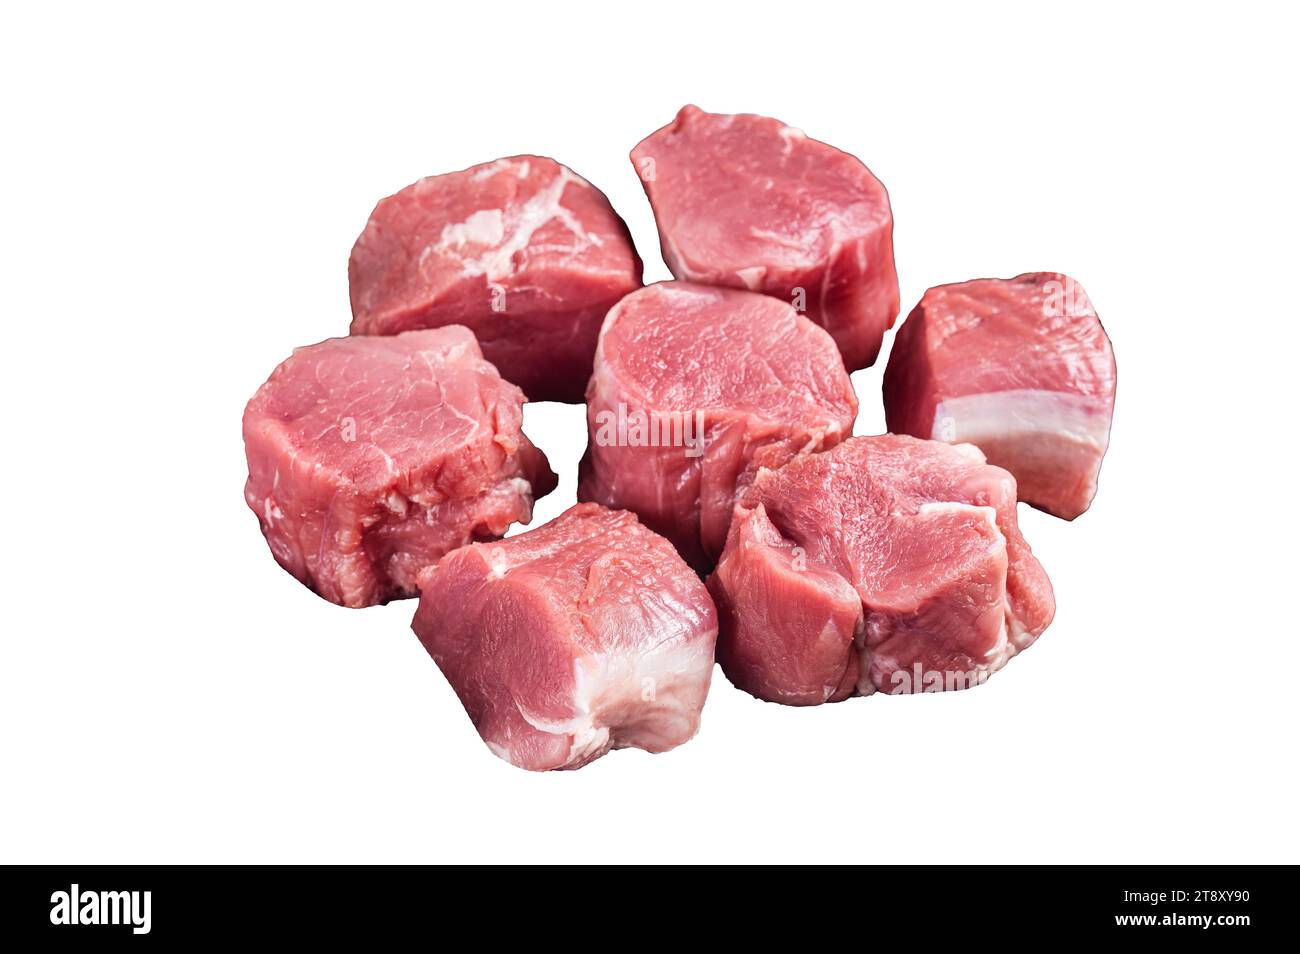 Raw pork tenderloin medallions steaks. Isolated, white background Stock Photo